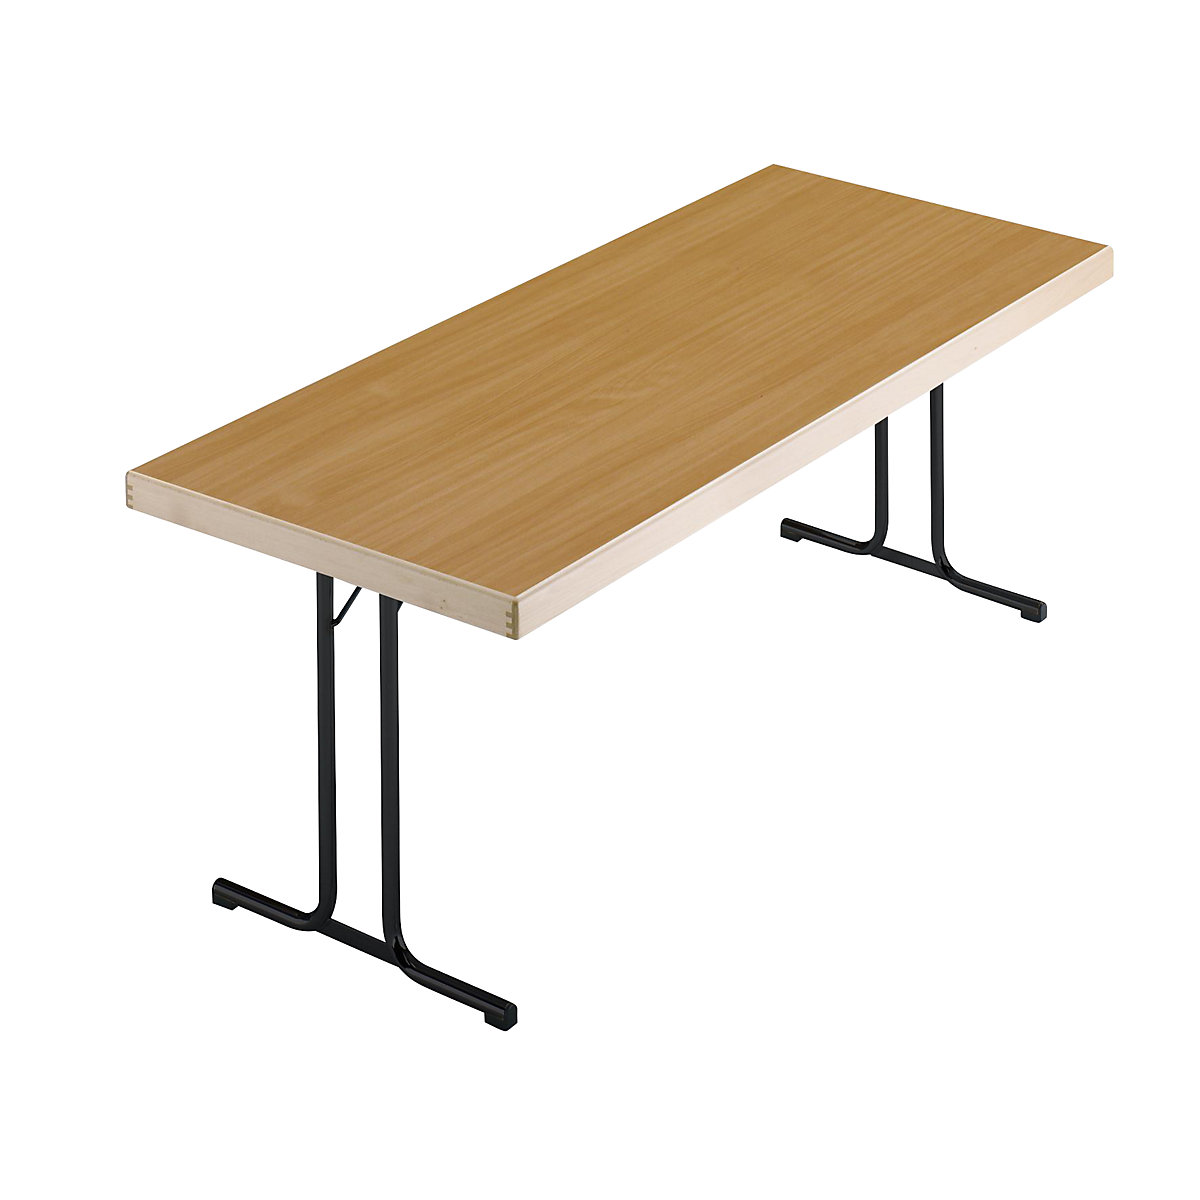 Sklápací stôl, podstavec s dvojitými nohami tvaru T, 1500 x 800 mm, podstavec antracitová, doska vzor buk-4